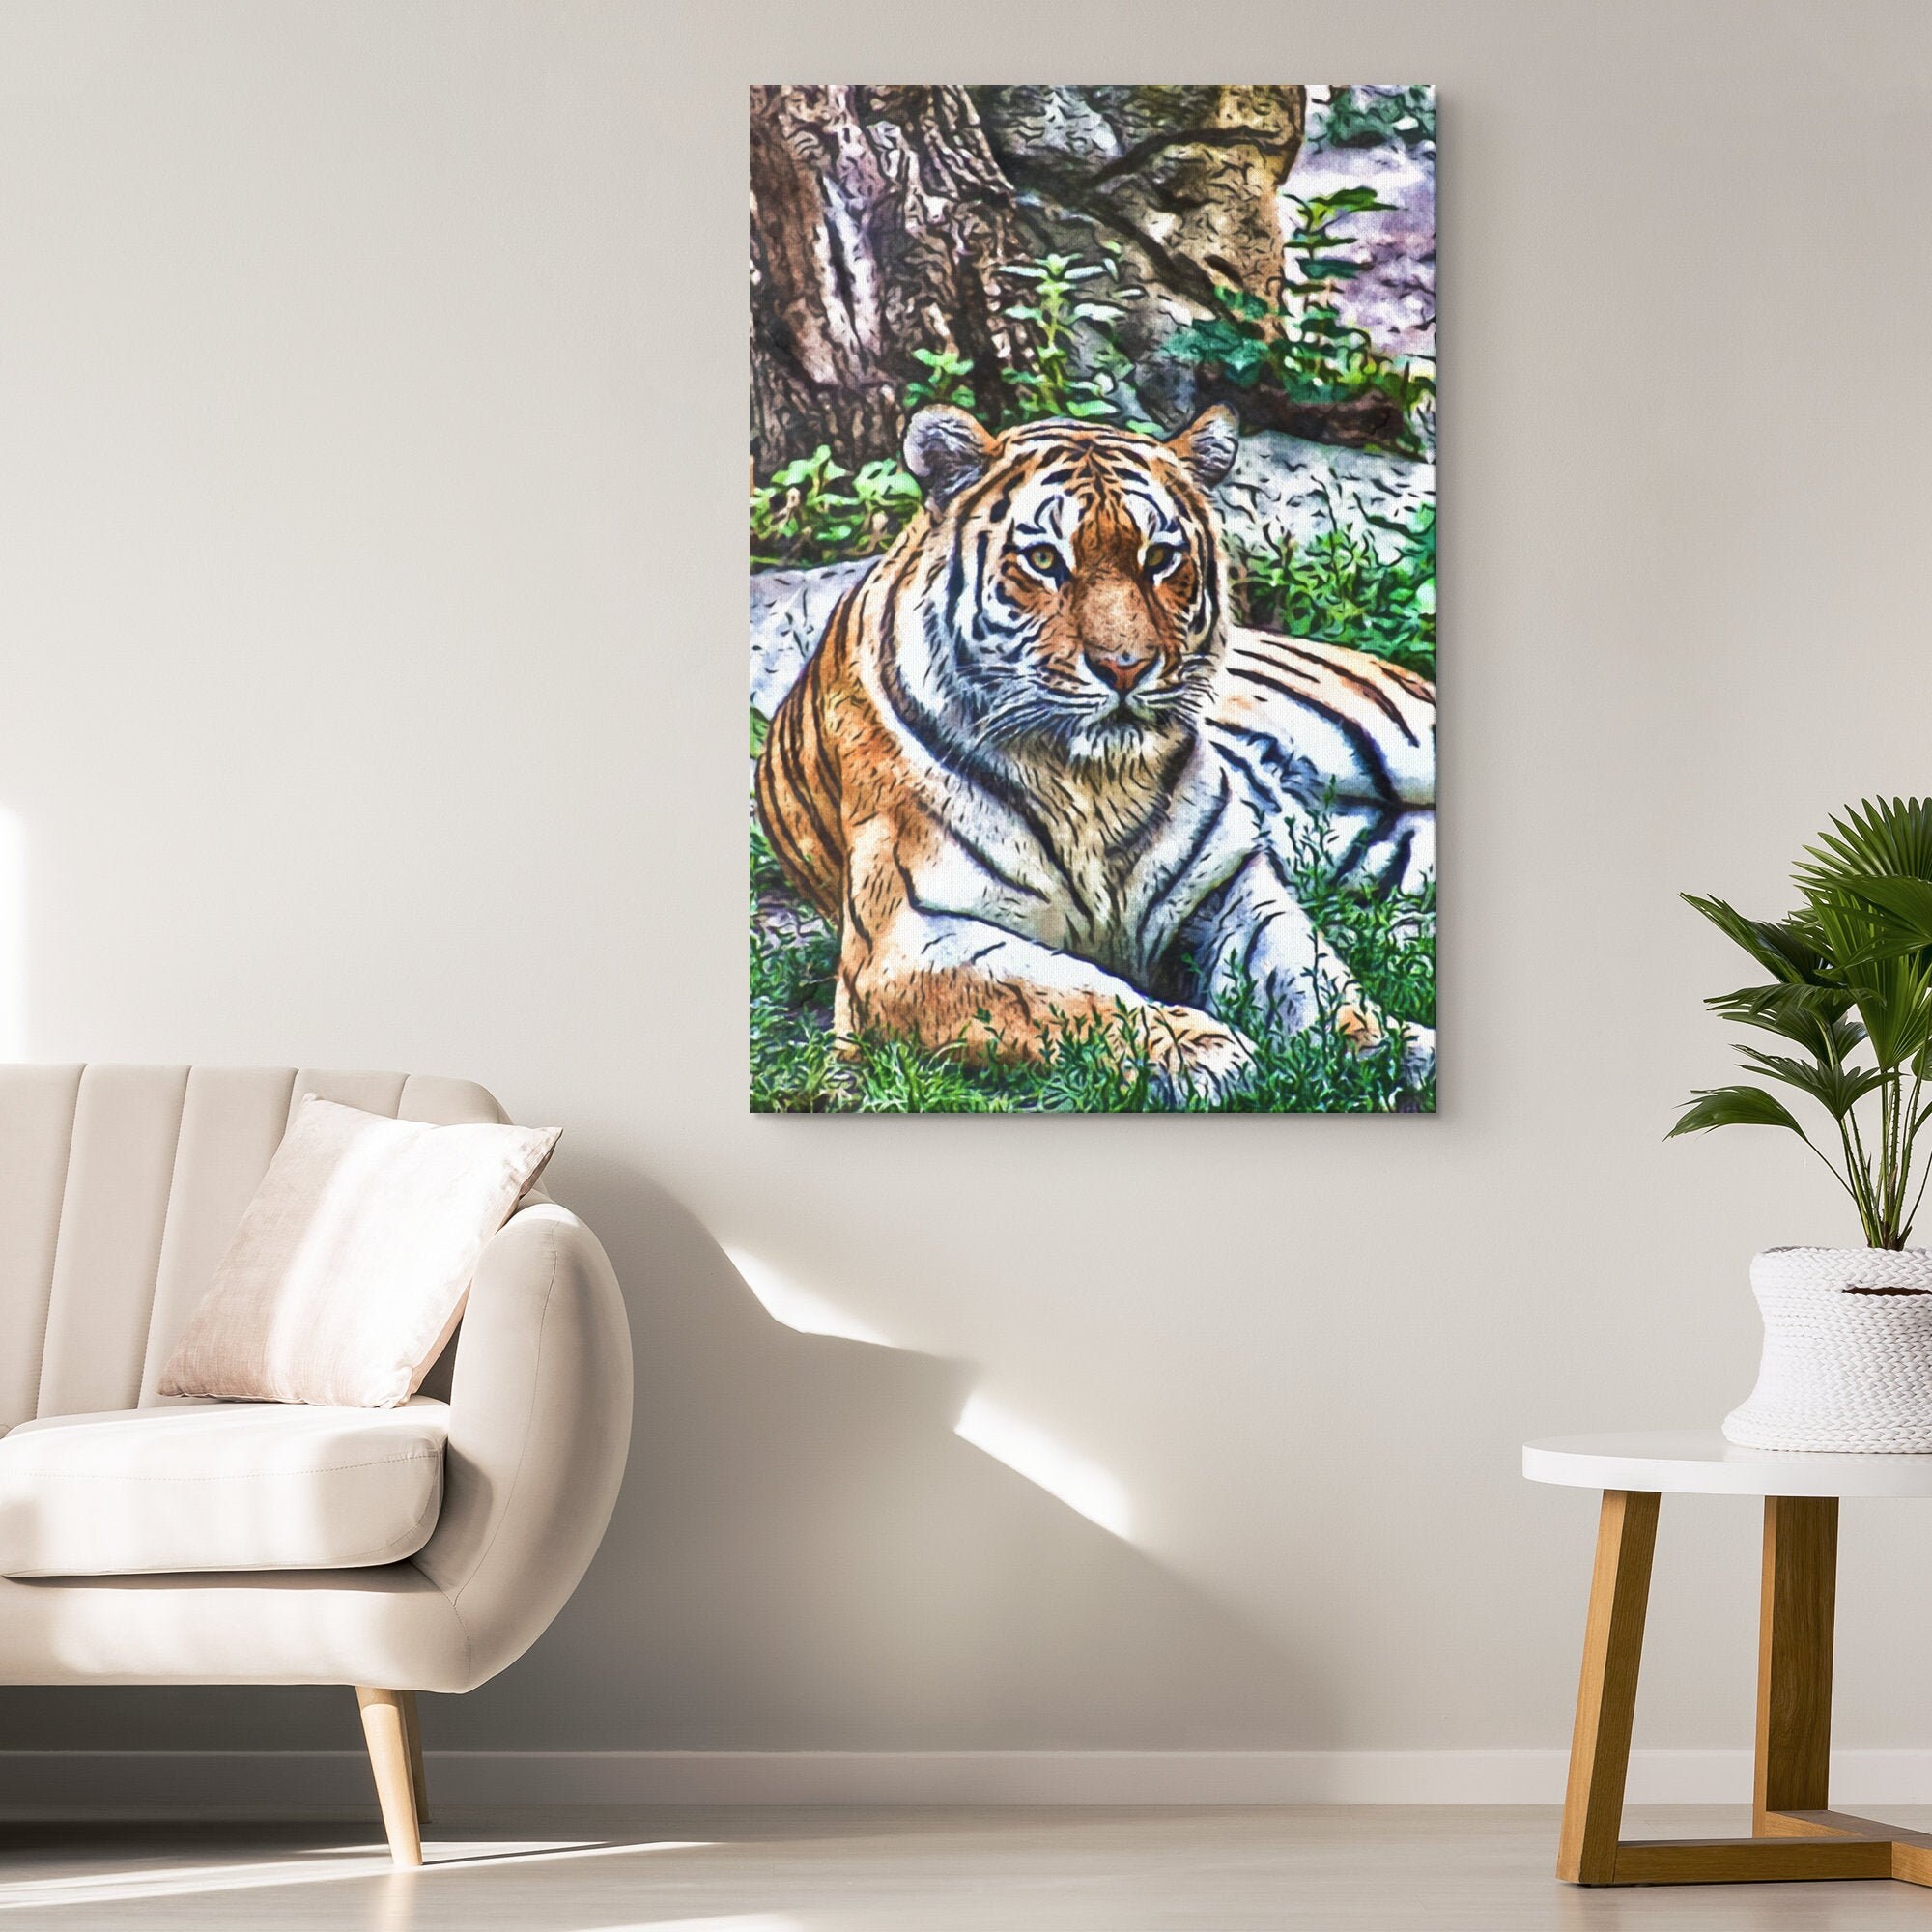 Tiger Canvas Wall Art: Tiger Interior Art Tiger Modern Decor | Etsy